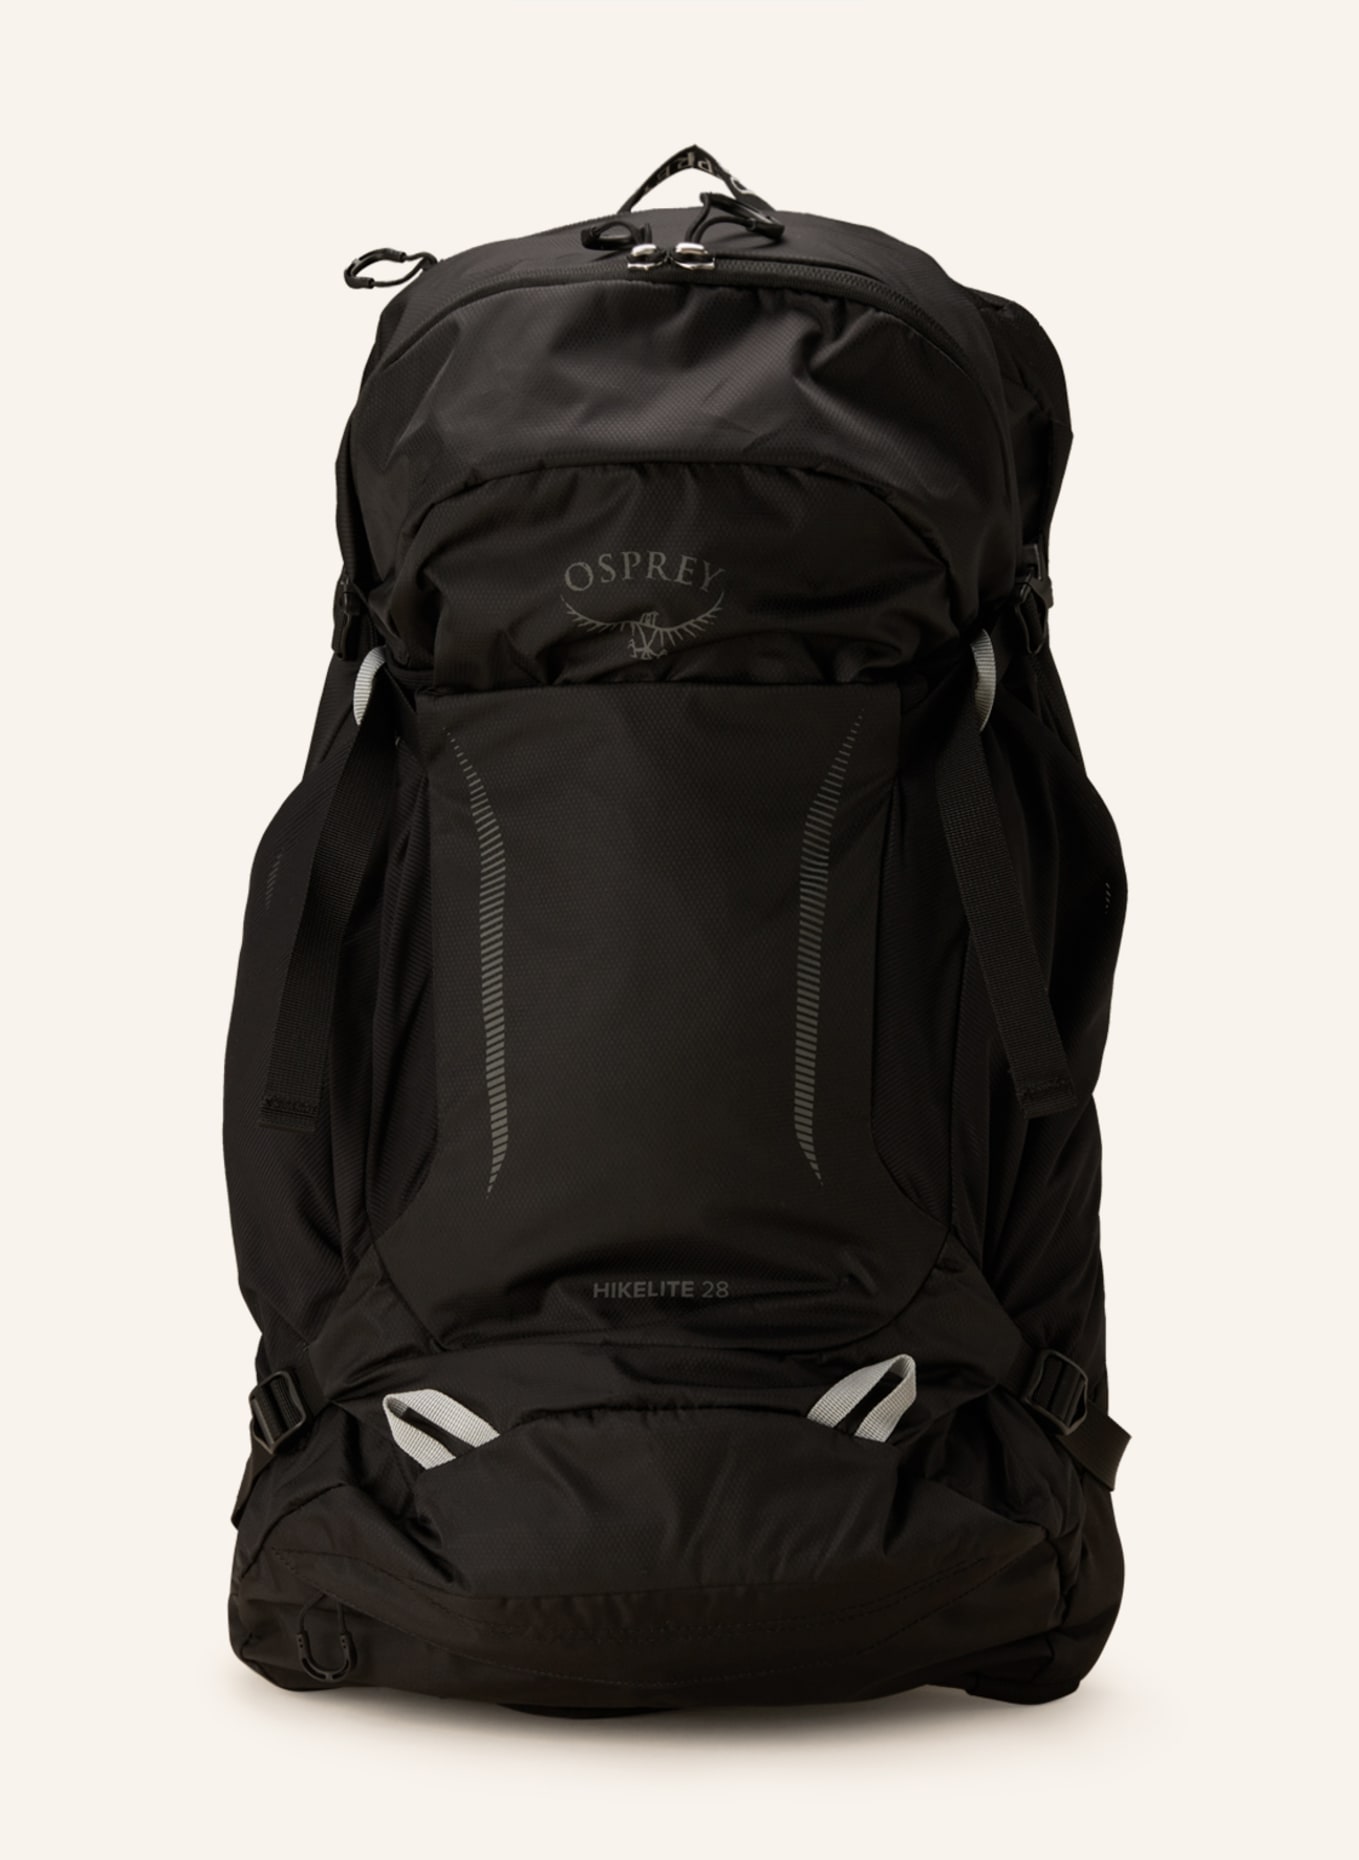 OSPREY Backpack HIKELITE 28 l, Color: BLACK (Image 1)